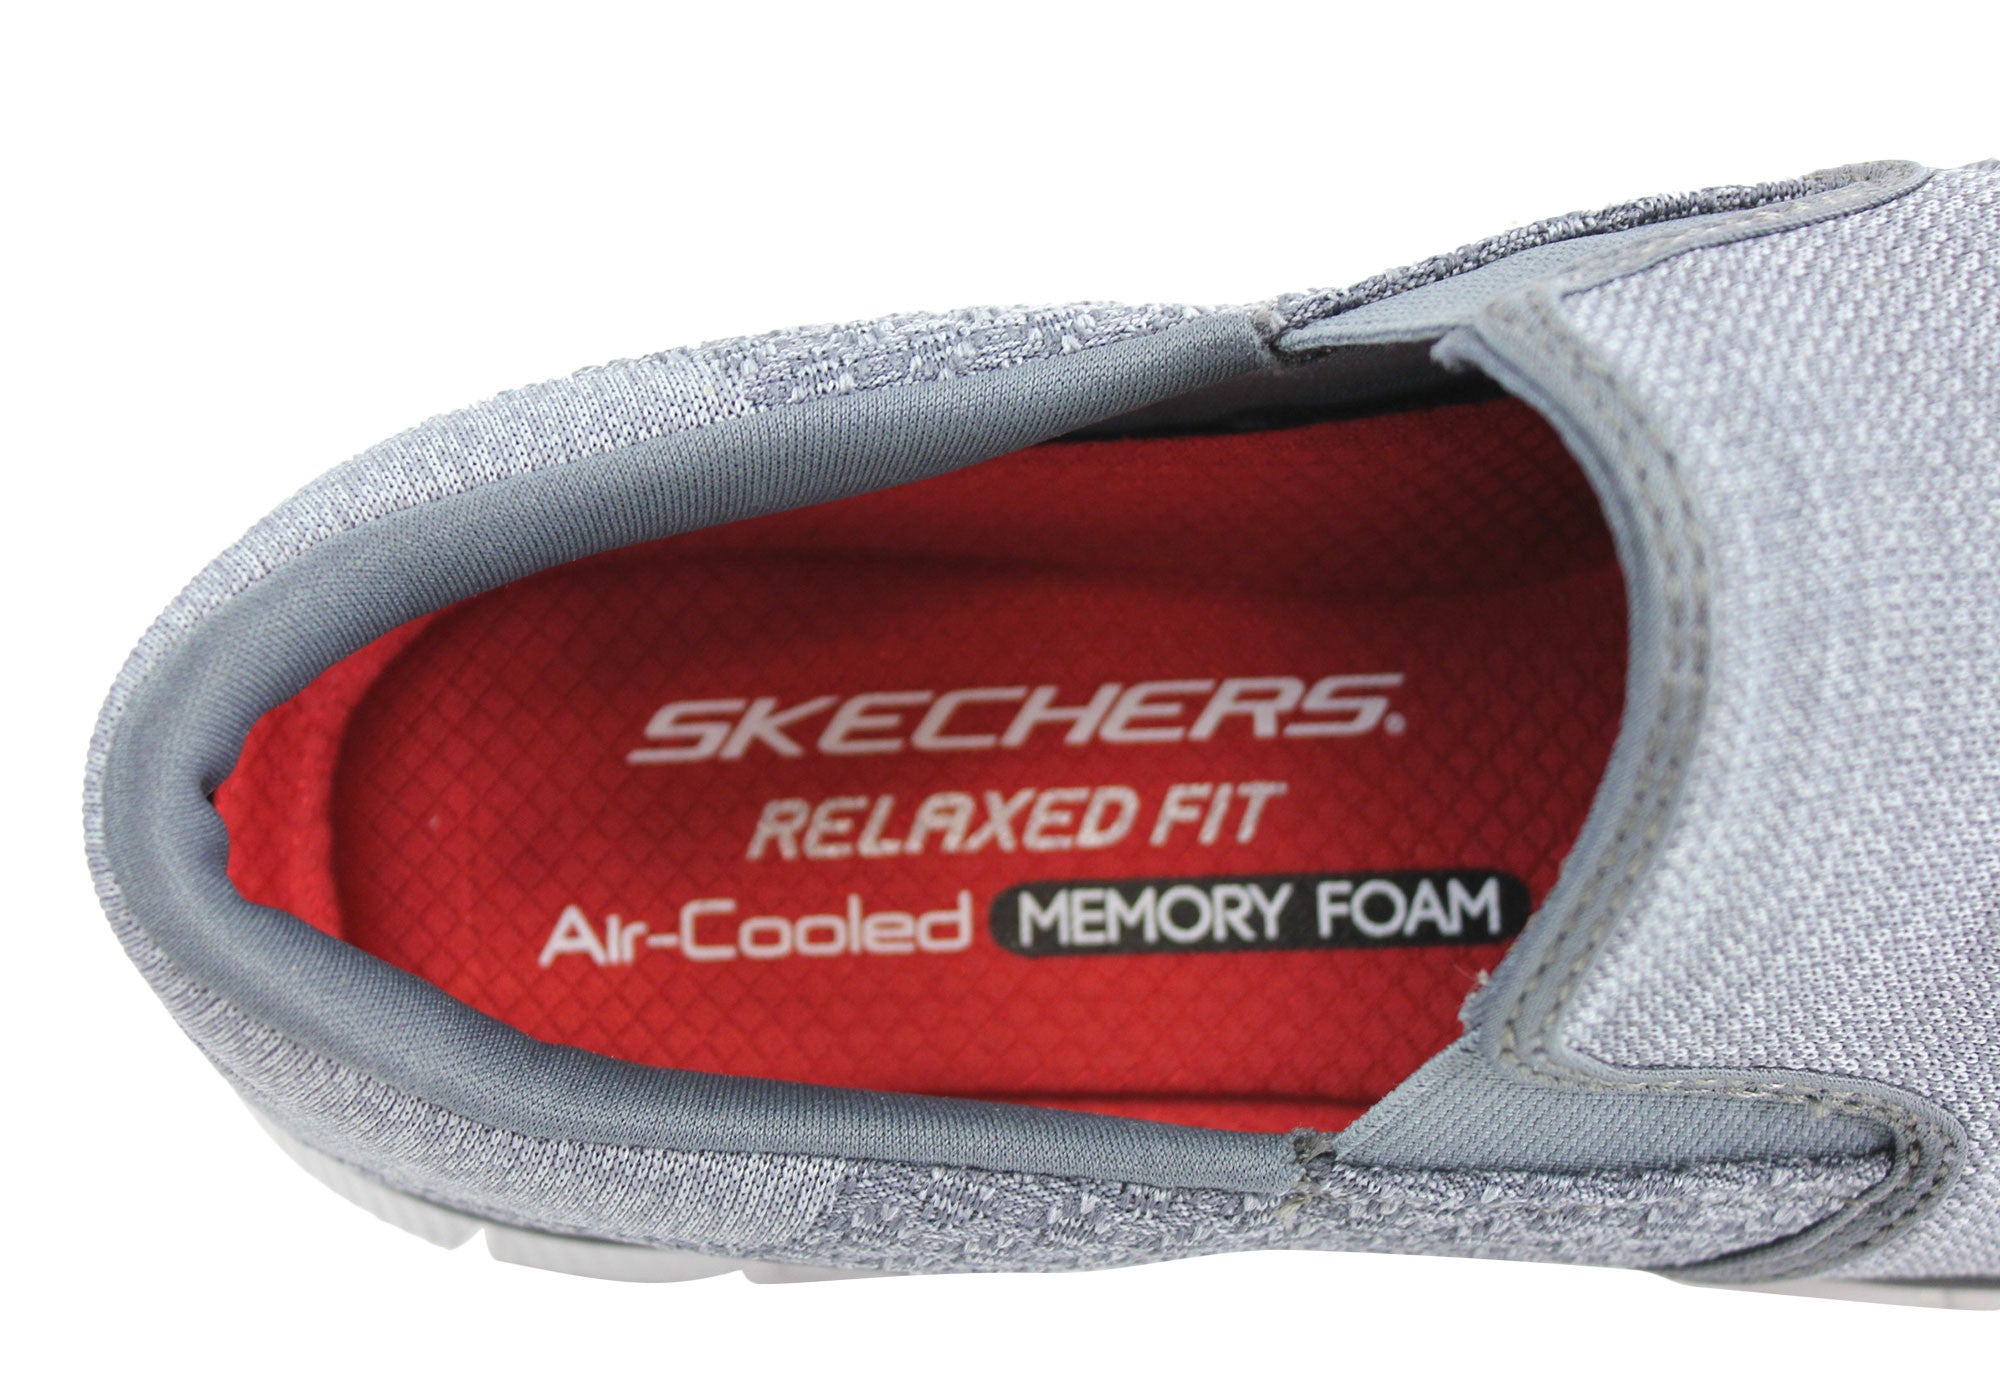 skechers memory foam shoes red